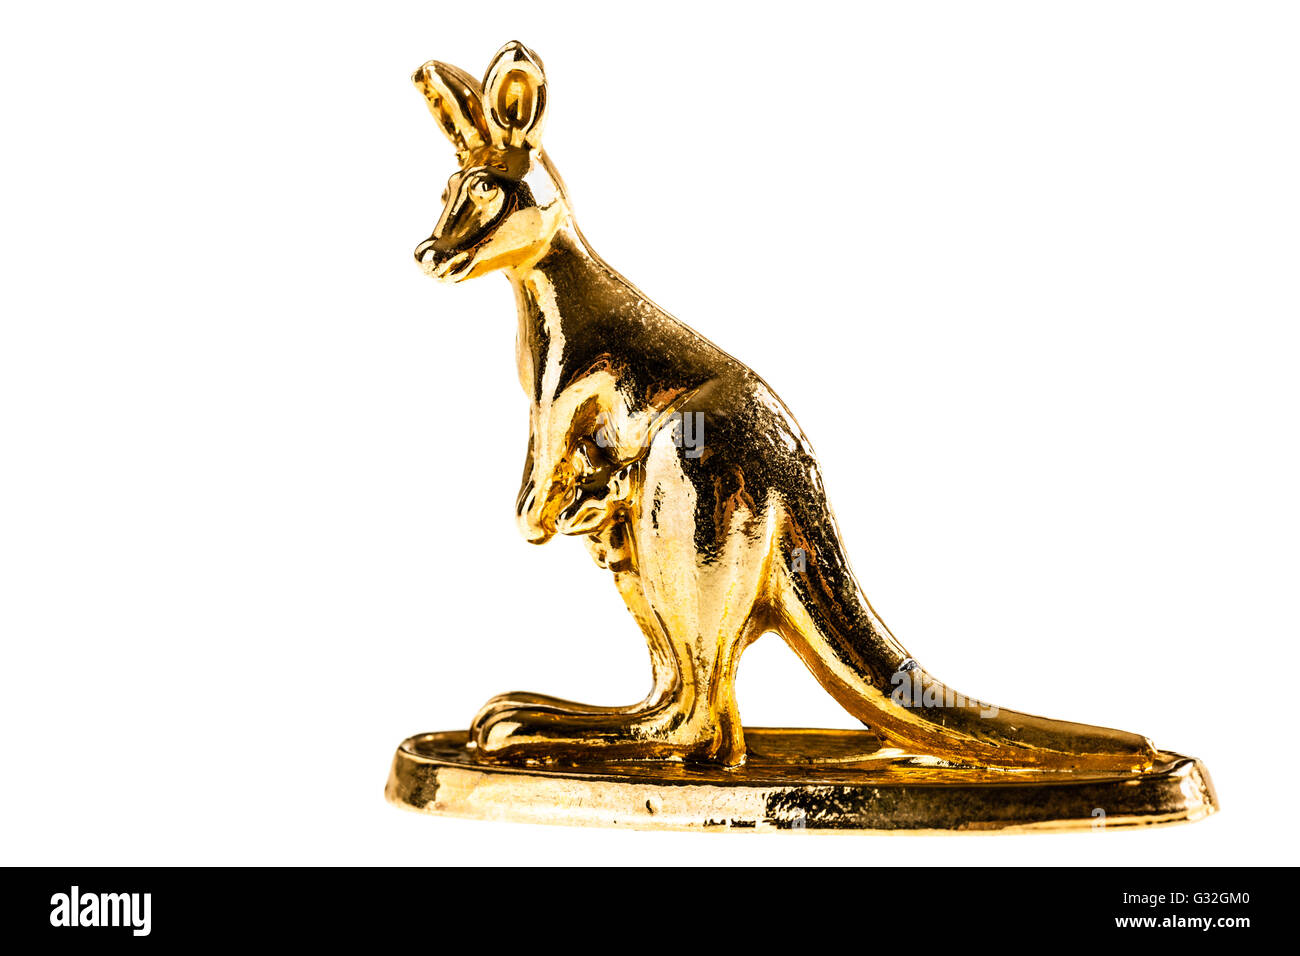 Une figurine kangourou d'or isolé sur fond blanc Banque D'Images